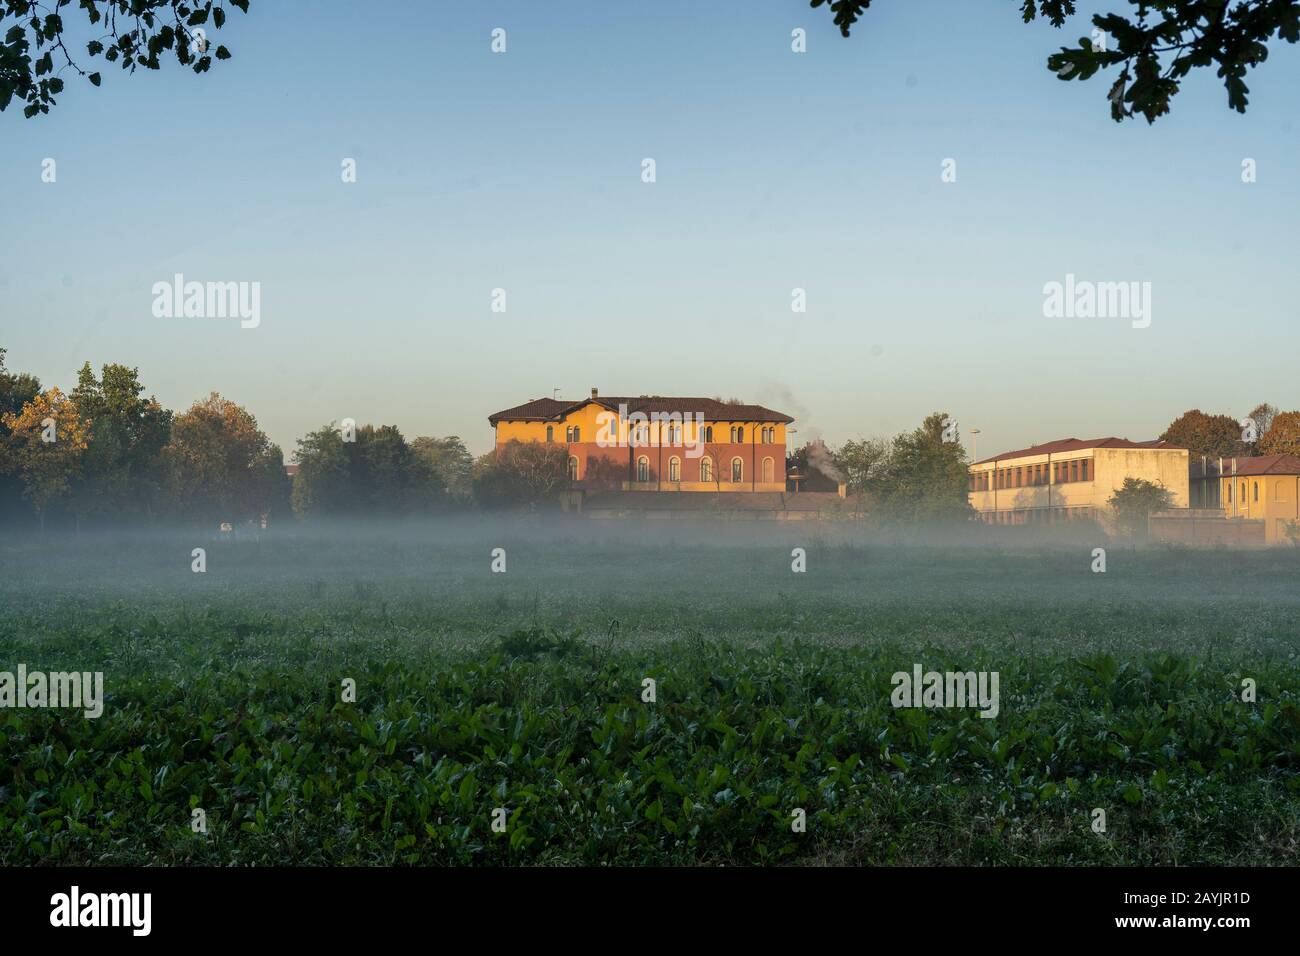 Mailand, Lombardei, Italien: Der Park, bekannt als Parco Nord, in einem nebligen Morgen im Oktober Stockfoto